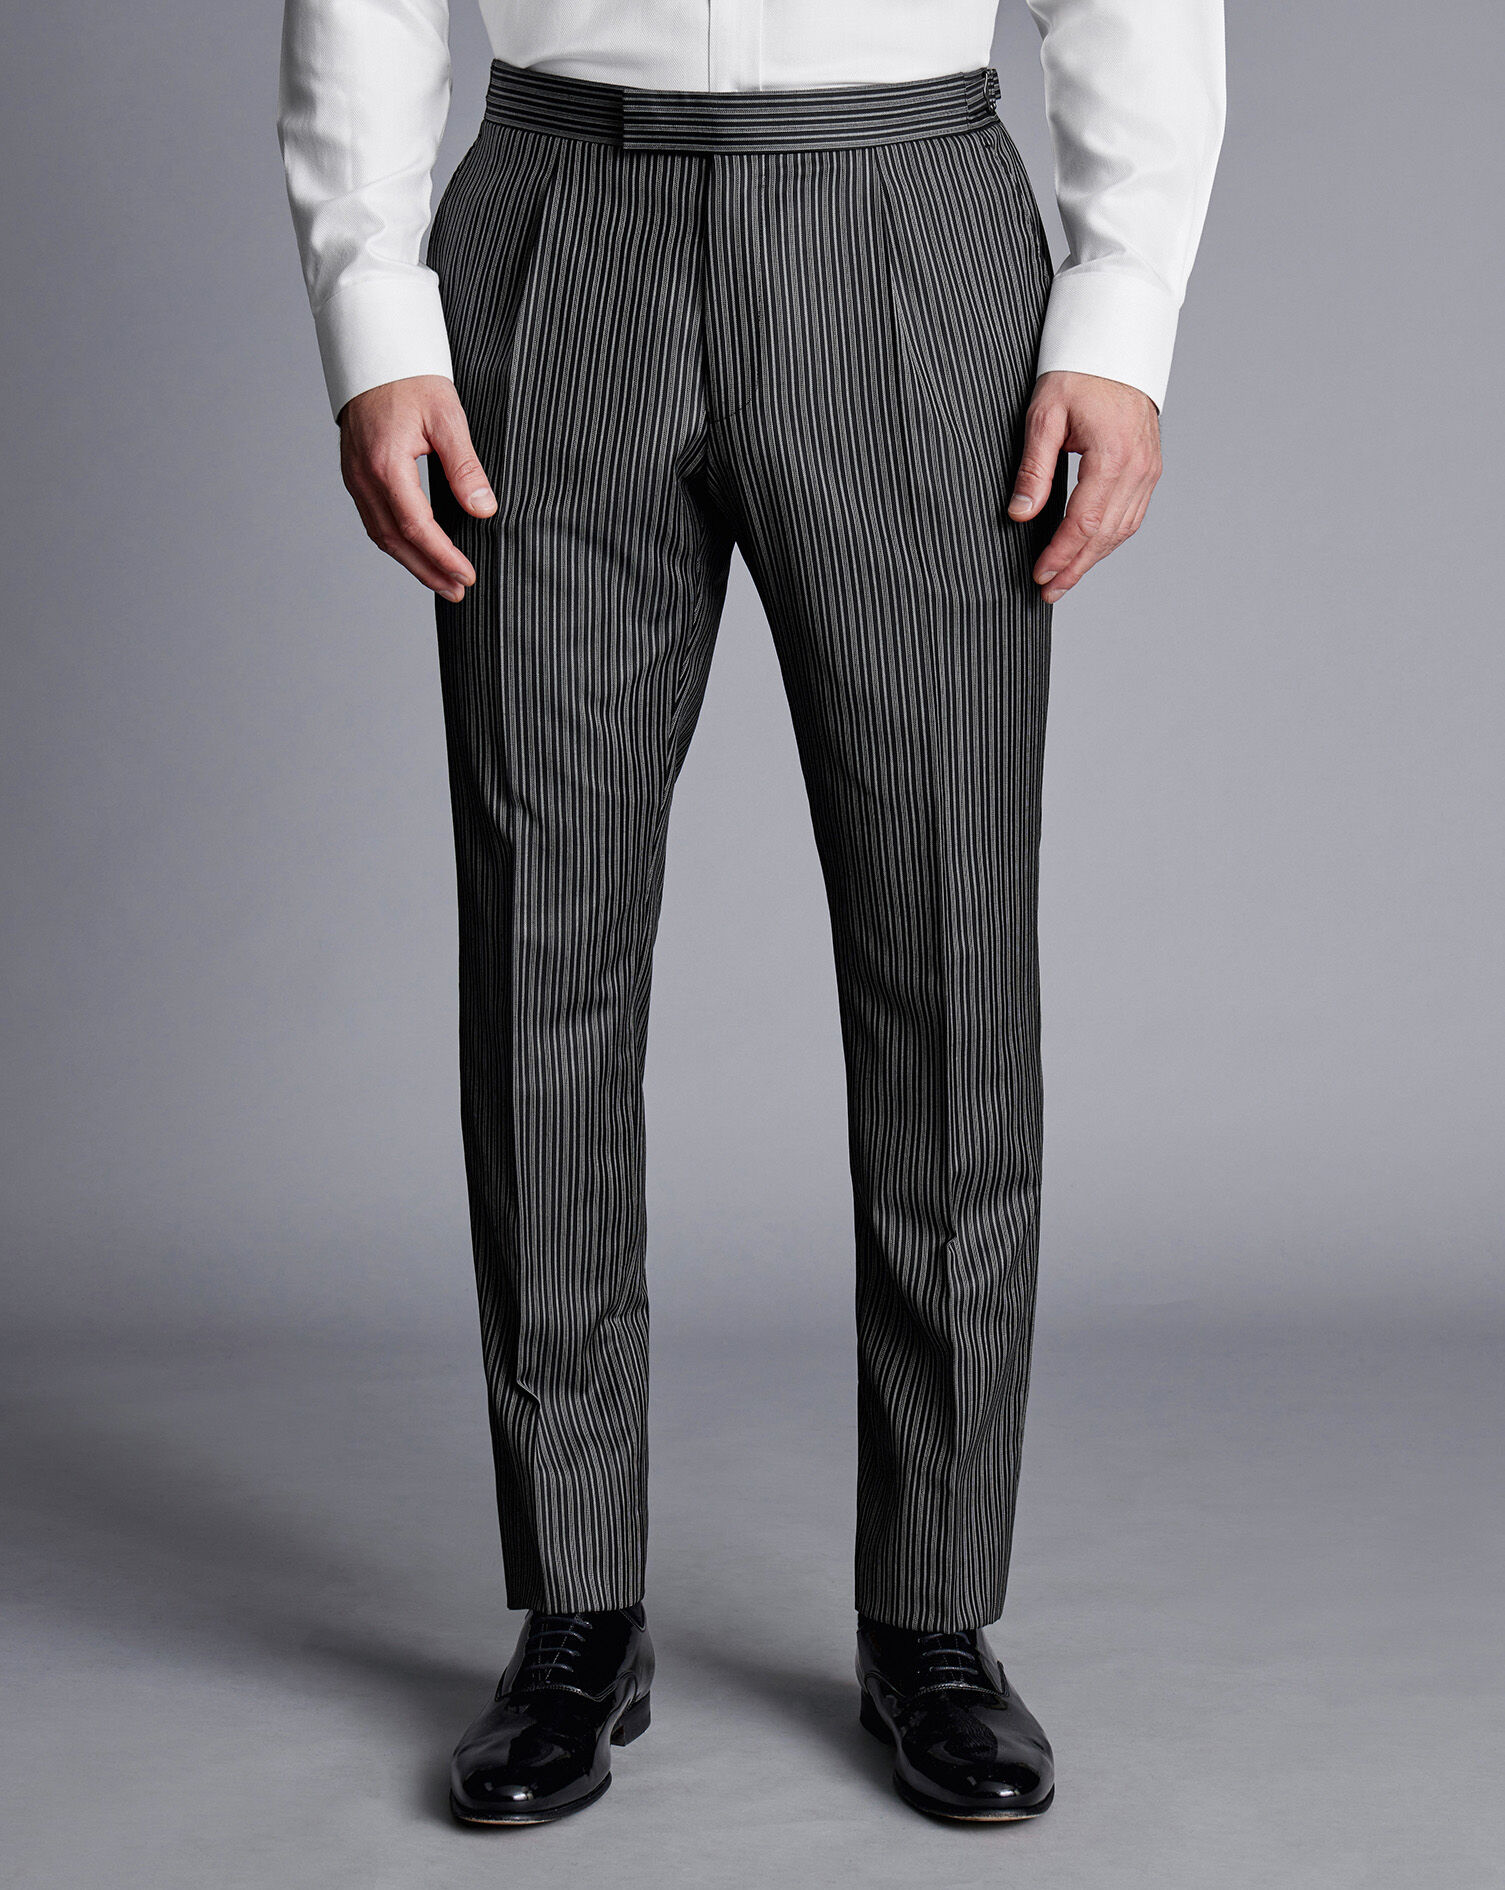 Buy Highlander Slim Fit Jogger Trouser for Men Online at Rs611  Ketch